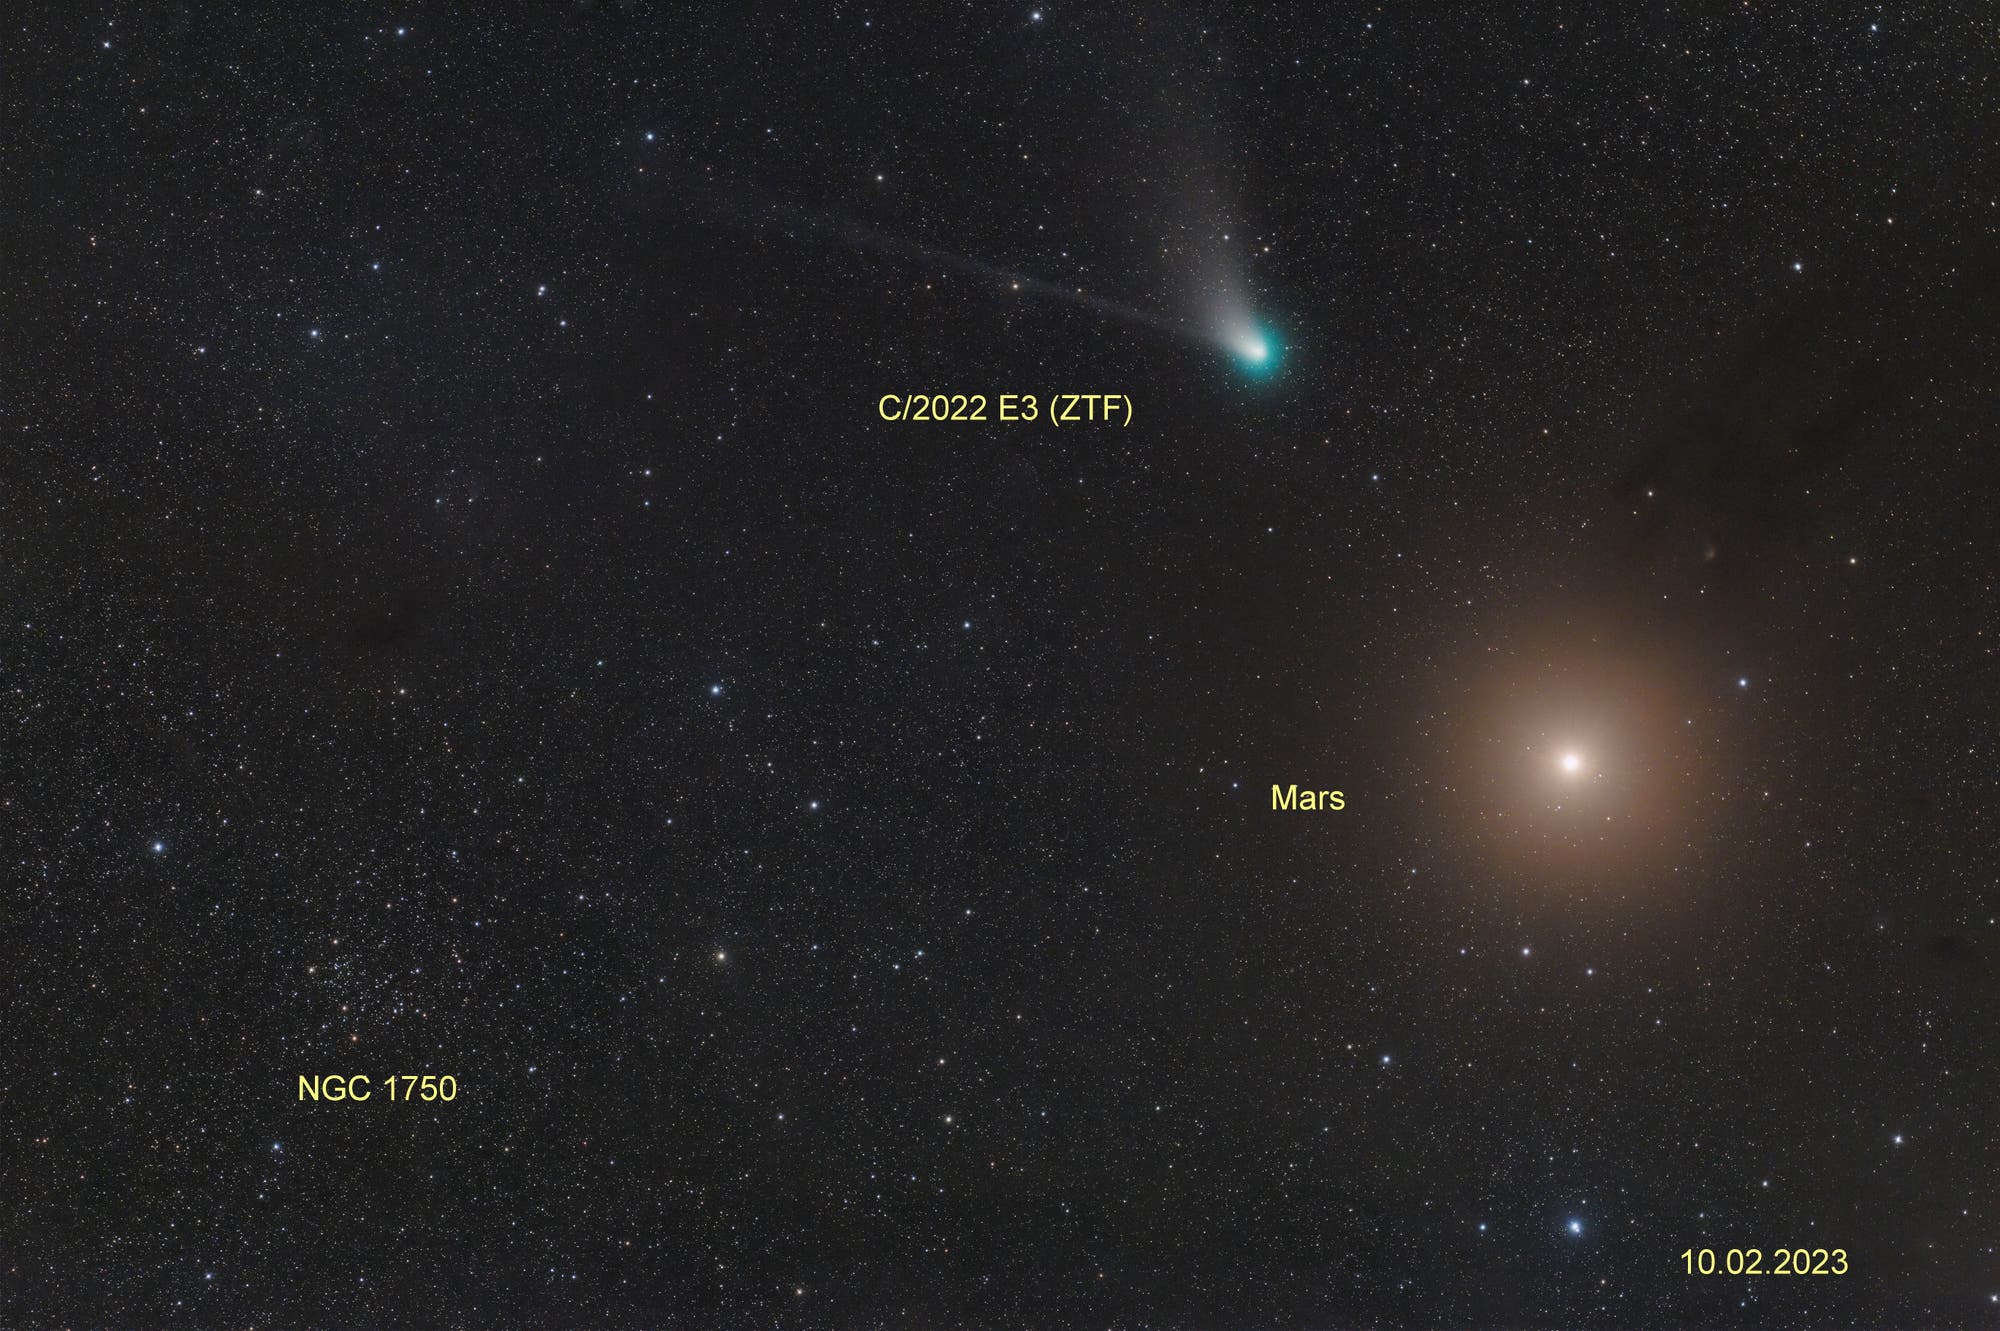 Komet C/2022 E3 (ZTF) bei Mars (2)